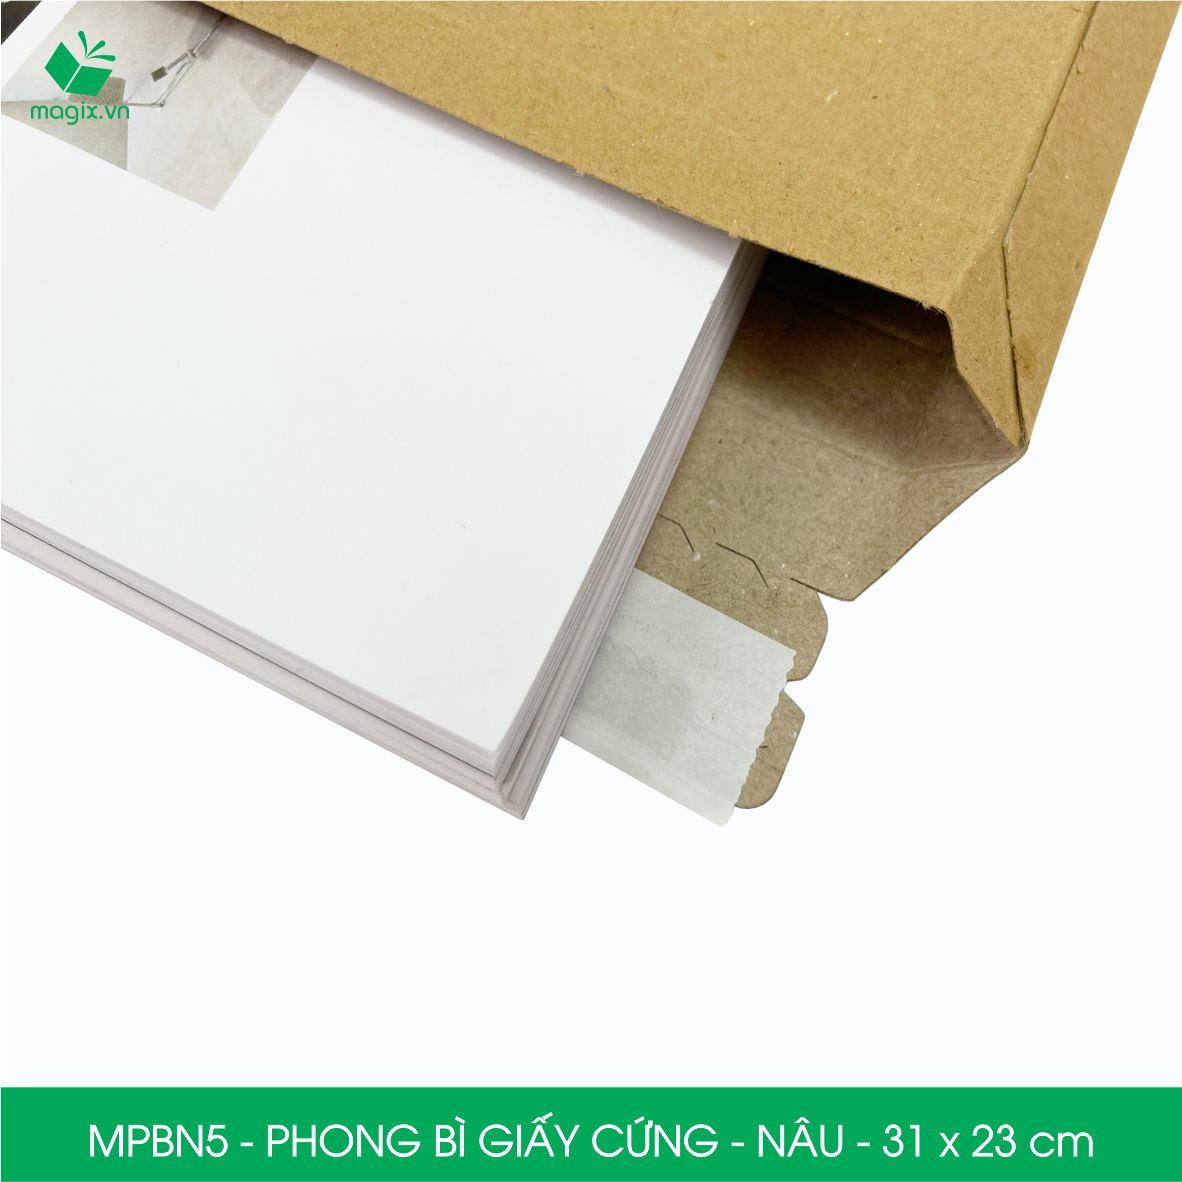 MPBN5 - 31x23 cm - Combo 60 phong bì giấy cứng đóng hàng màu nâu thay thế túi gói hàng